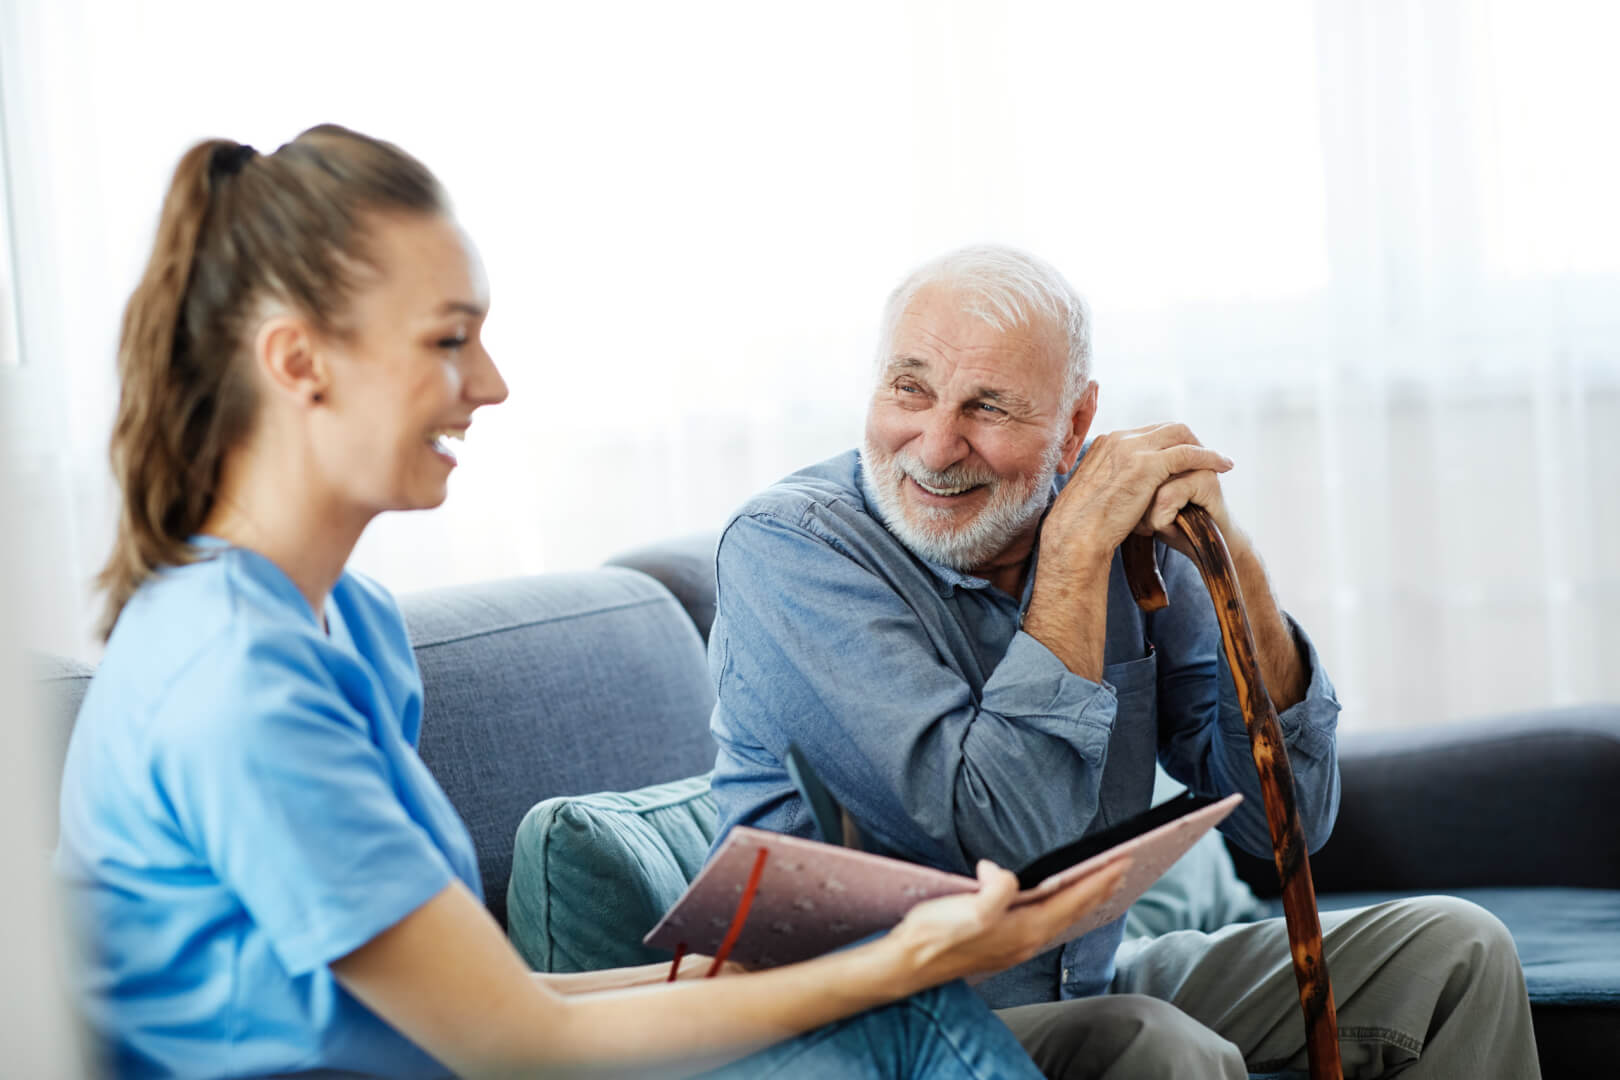 En la imagen, una cuidadora hace reír a un hombre mayor en el sofá mientras le enseña un cuaderno.